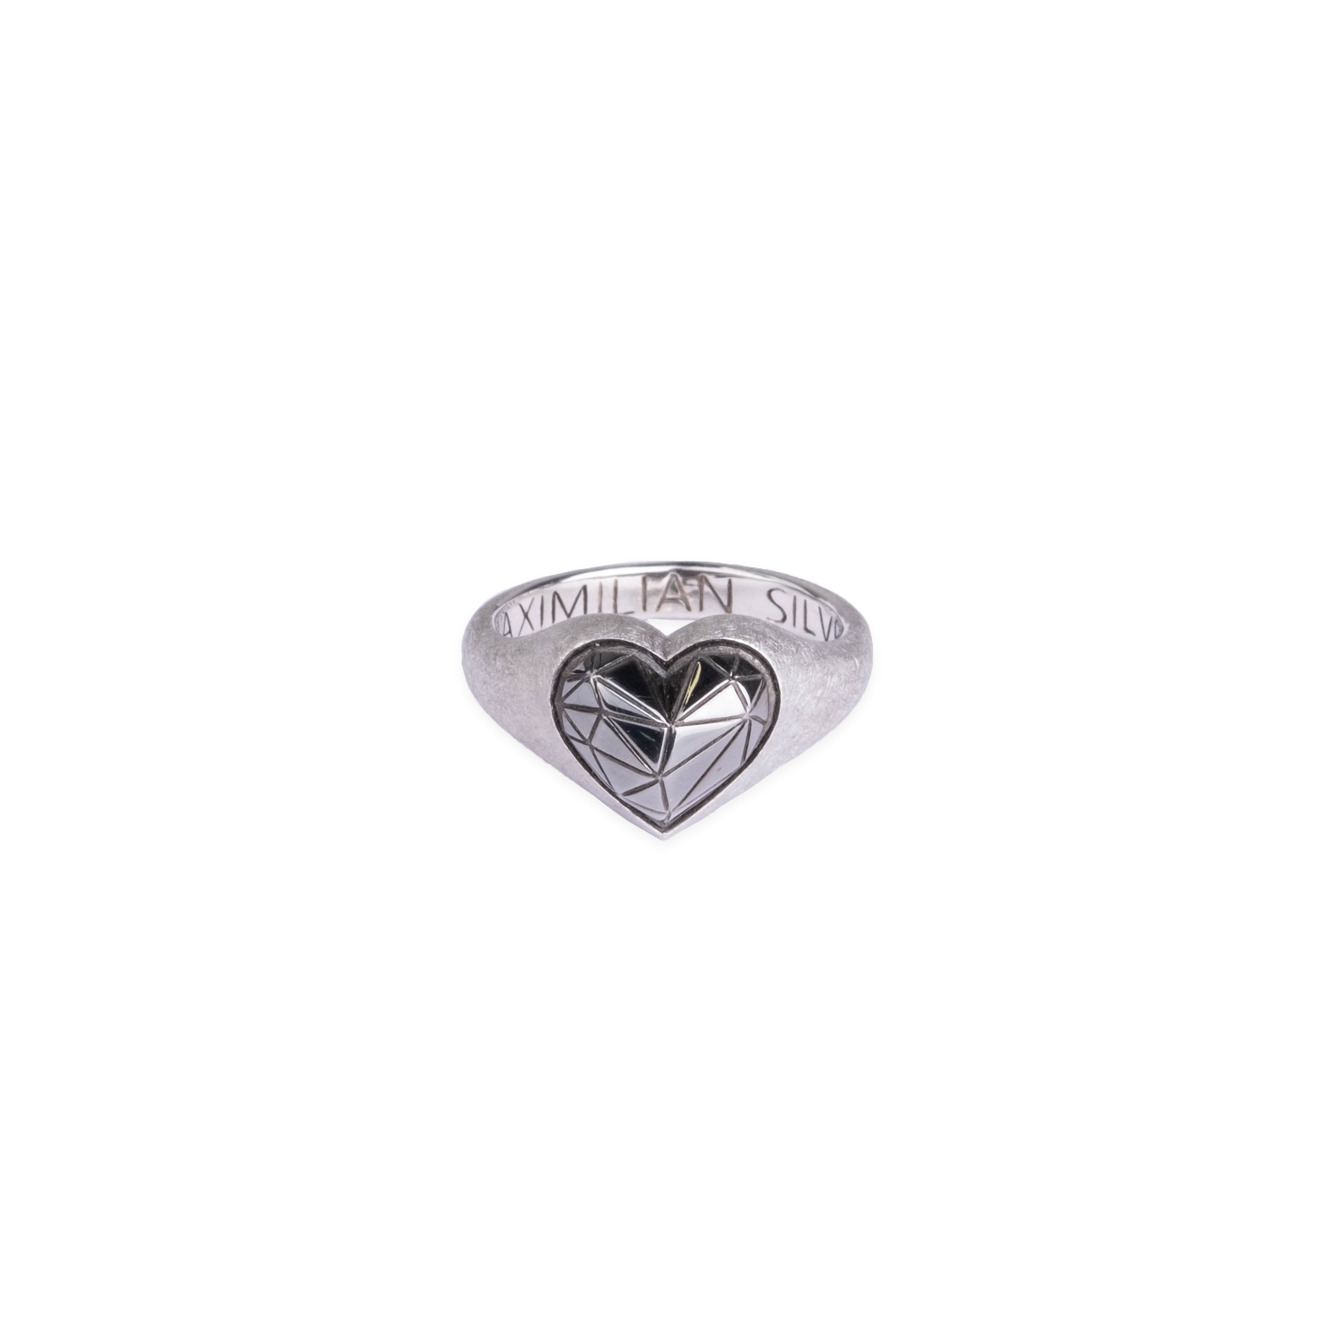 Maximilian Silver Label Матовое кольцо из серебра maximilian silver label кольцо сердце из серебра червовый валет позолоченное матовое